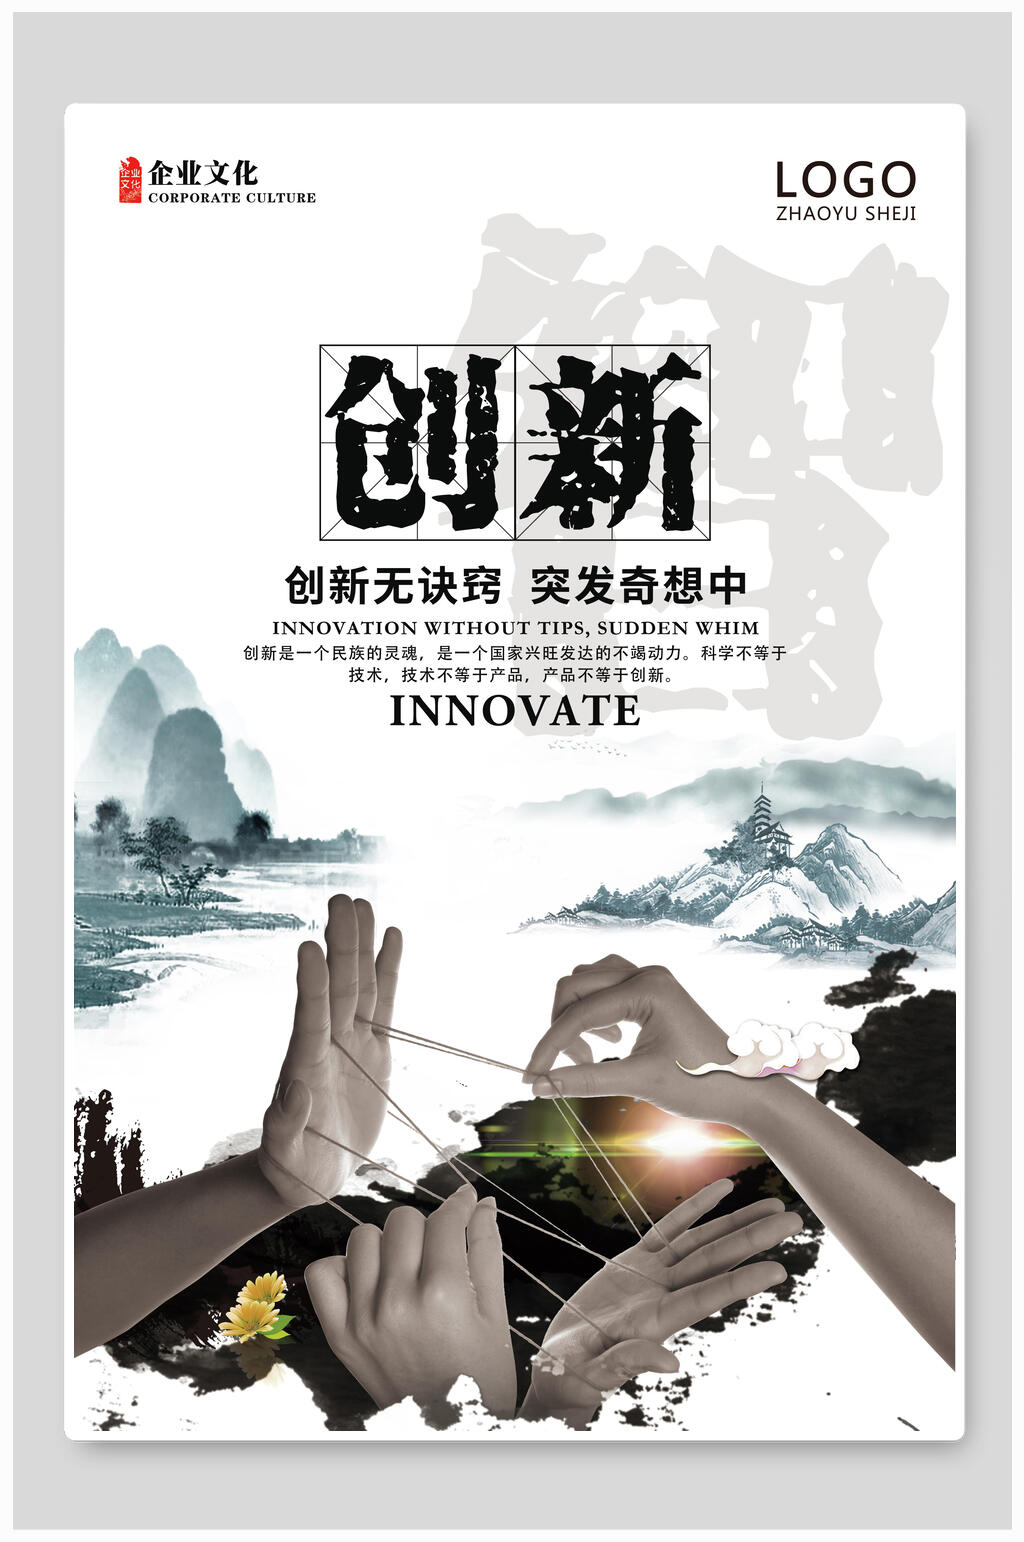 创新无诀窍企业文化宣传海报素材